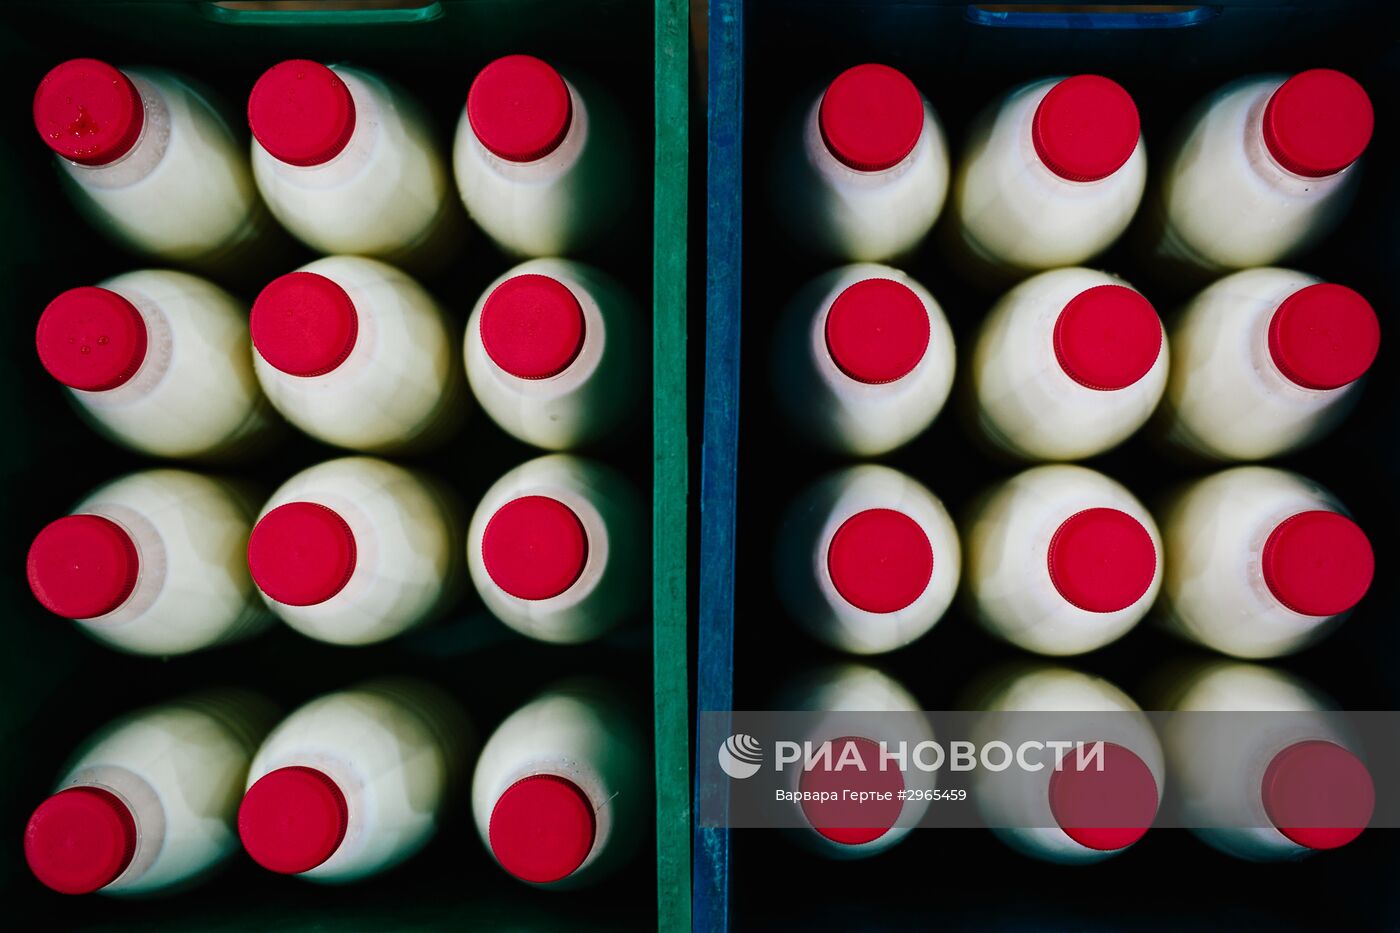 Производство молочных продуктов в Иванове